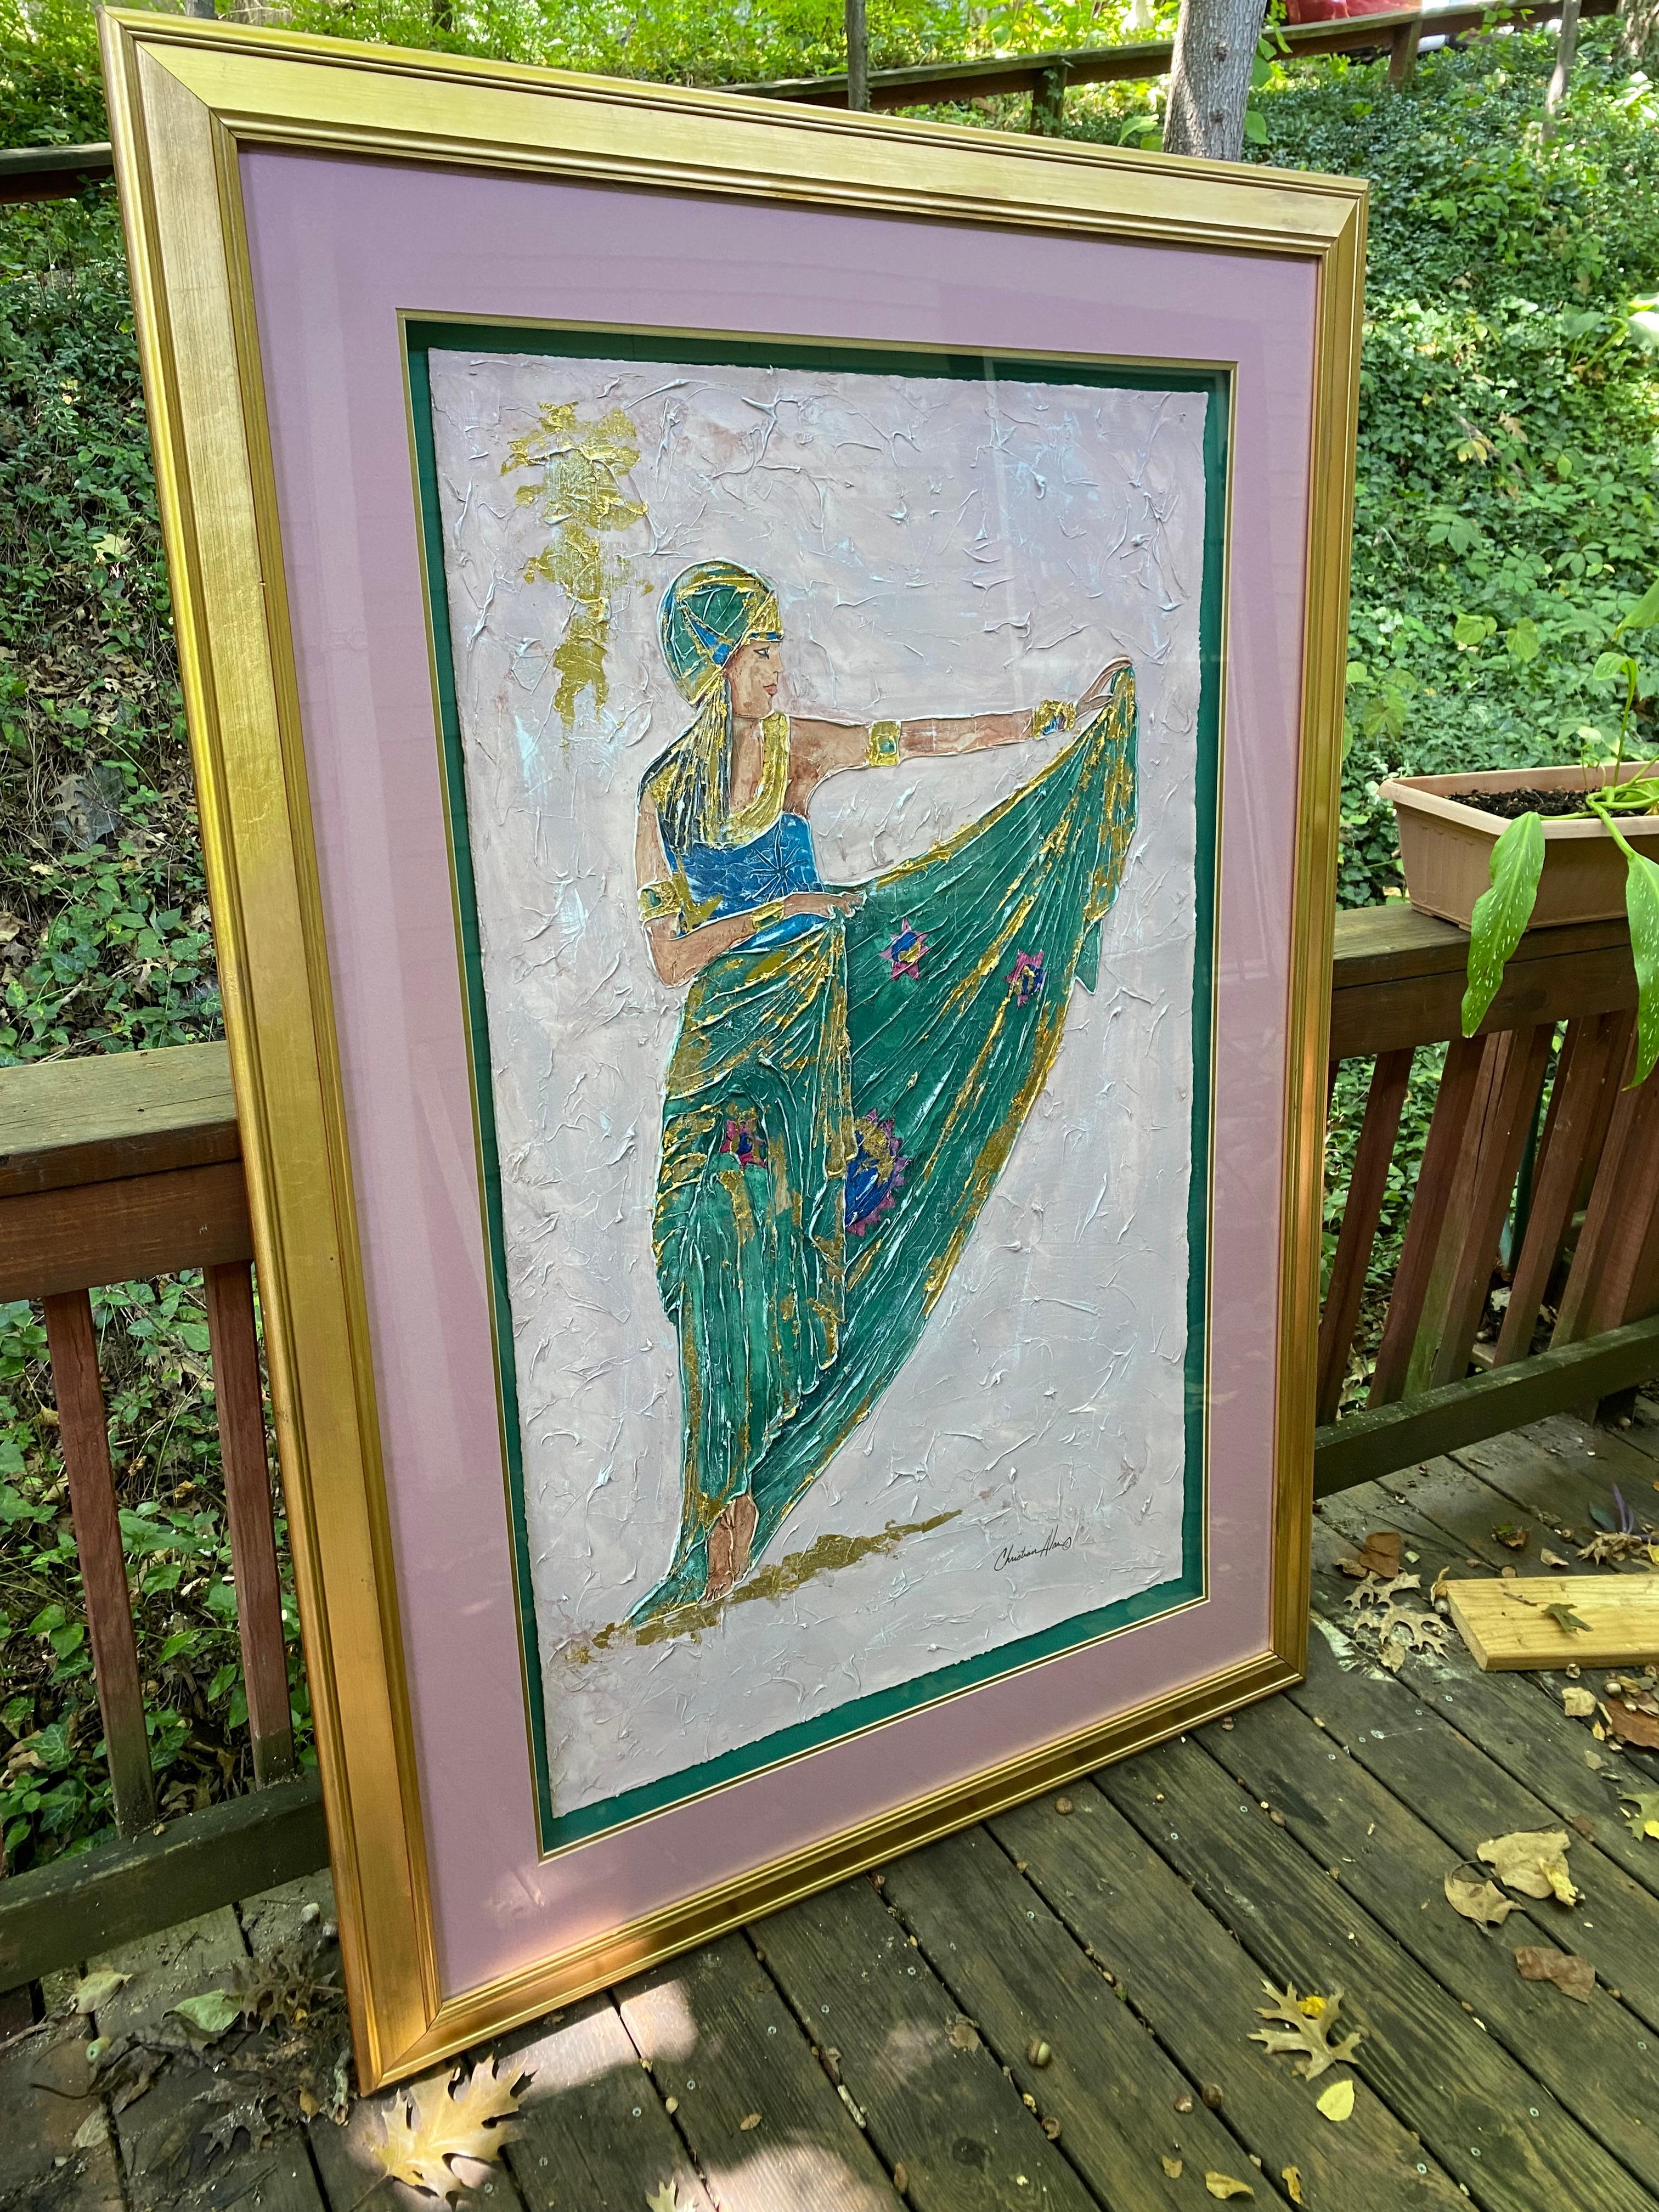 Originalgemälde einer Frau in grünem Kleid mit goldenen, lila und rosa Akzenten.  
Signiert von Christian Alan.
Gemischte Medien des 20. Jahrhunderts.
Malerei auf Papier.
Großes Bild.   Bild ist 49